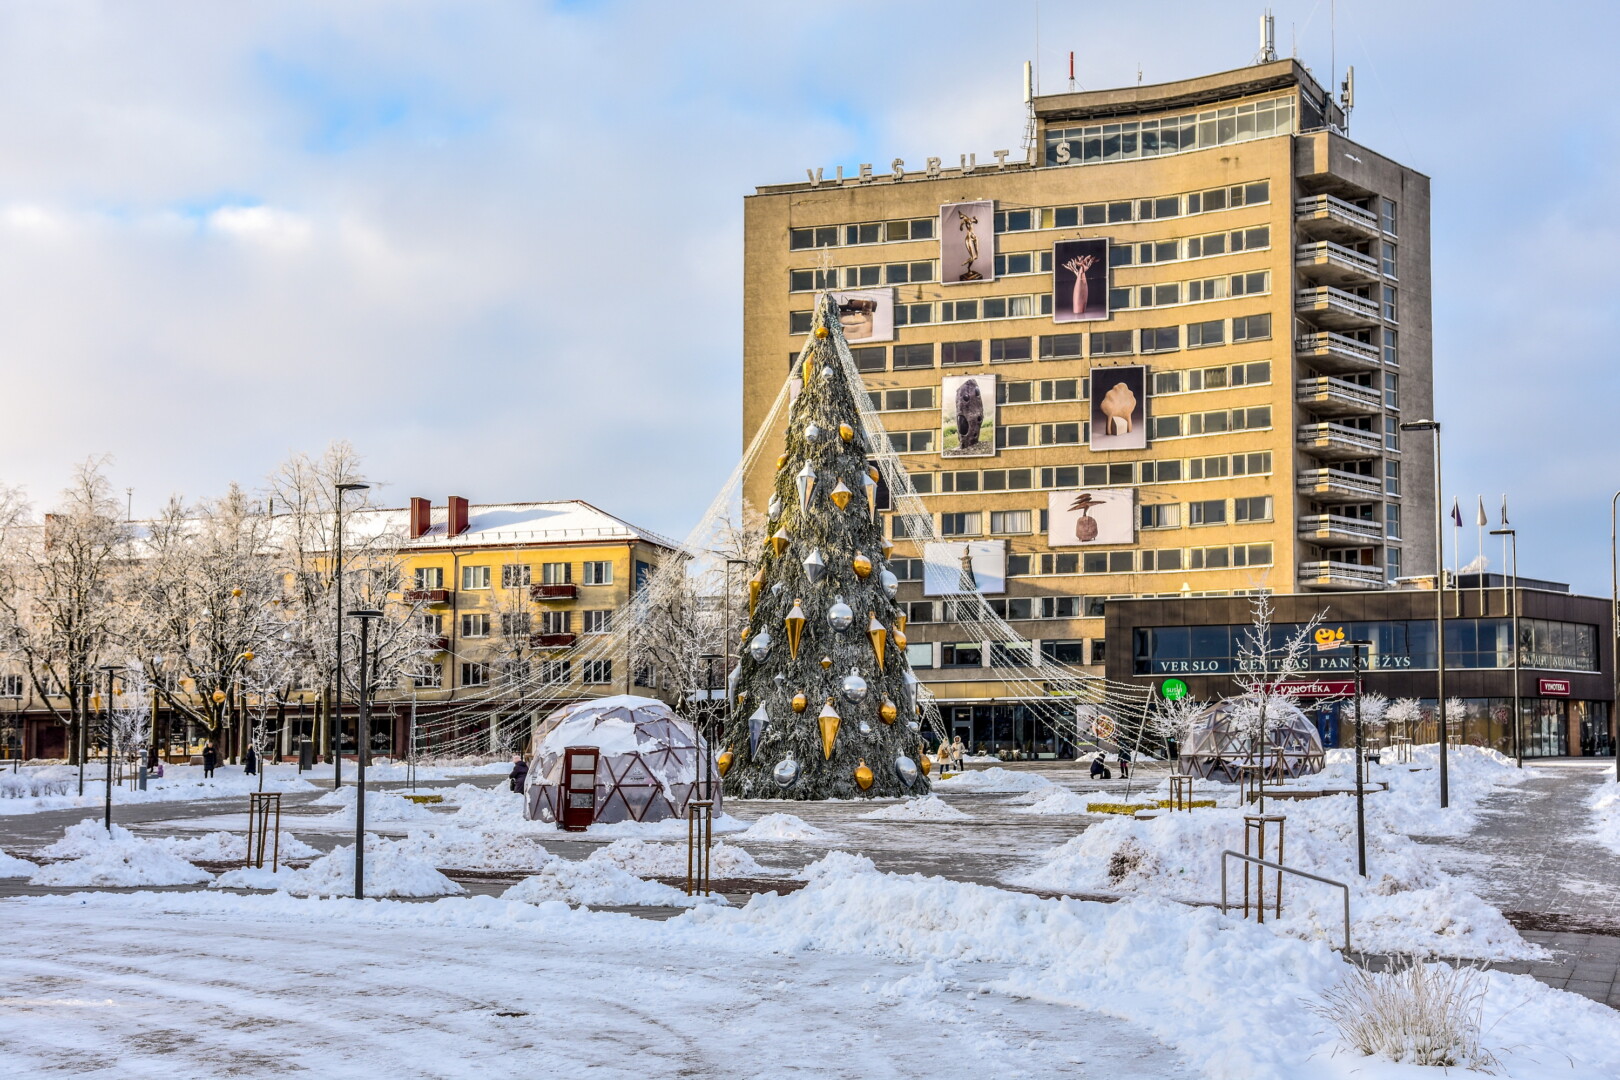 Vos papuošus kalėdines miestų egles, Lietuvoje prasideda nemenka konkurencija – kieno gražiausia, įspūdingiausia.